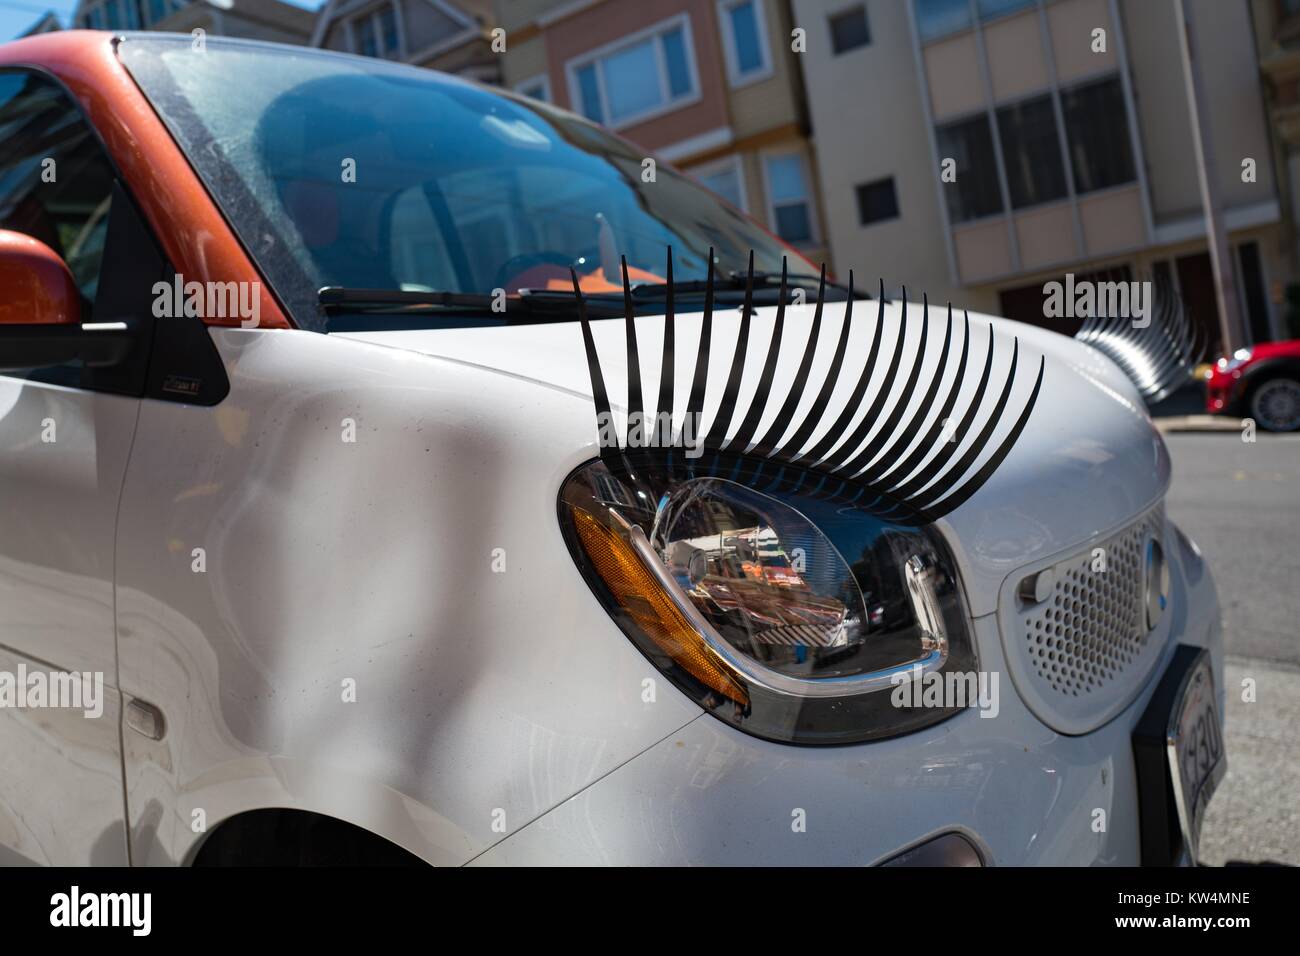 Kleines Auto mit Scheinwerfern ausgestattet, wie Wimpern, auf der Straße in  der Cow Hollow Viertel von San Francisco, Kalifornien geparkt, August 28,  2016 Stockfotografie - Alamy